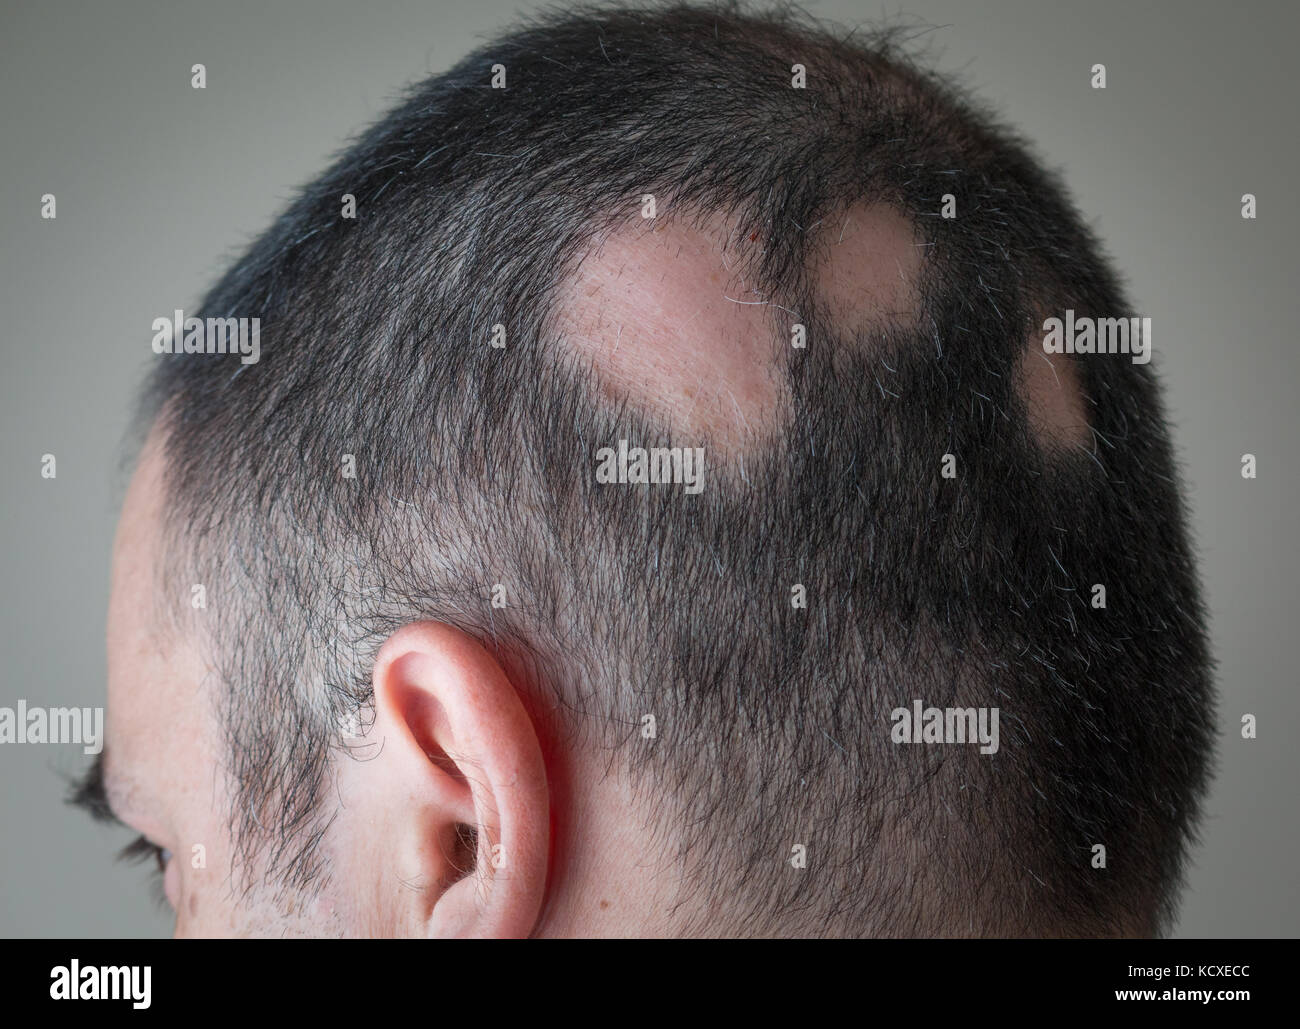 Alopezie Haarausfall aerata vor Ort Stockfoto